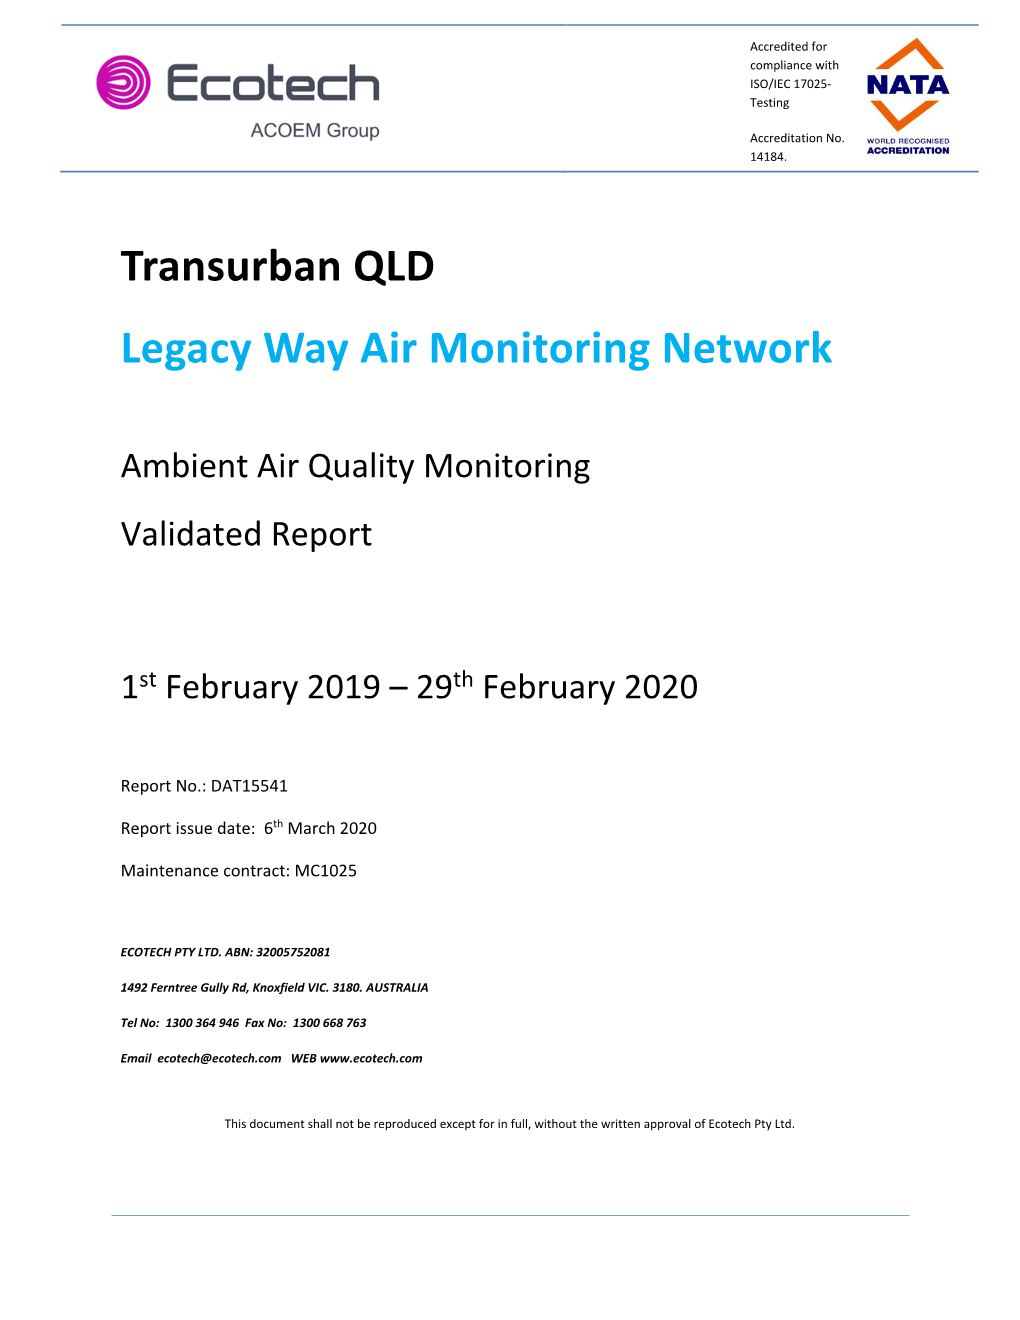 Transurban QLD Legacy Way Air Monitoring Network